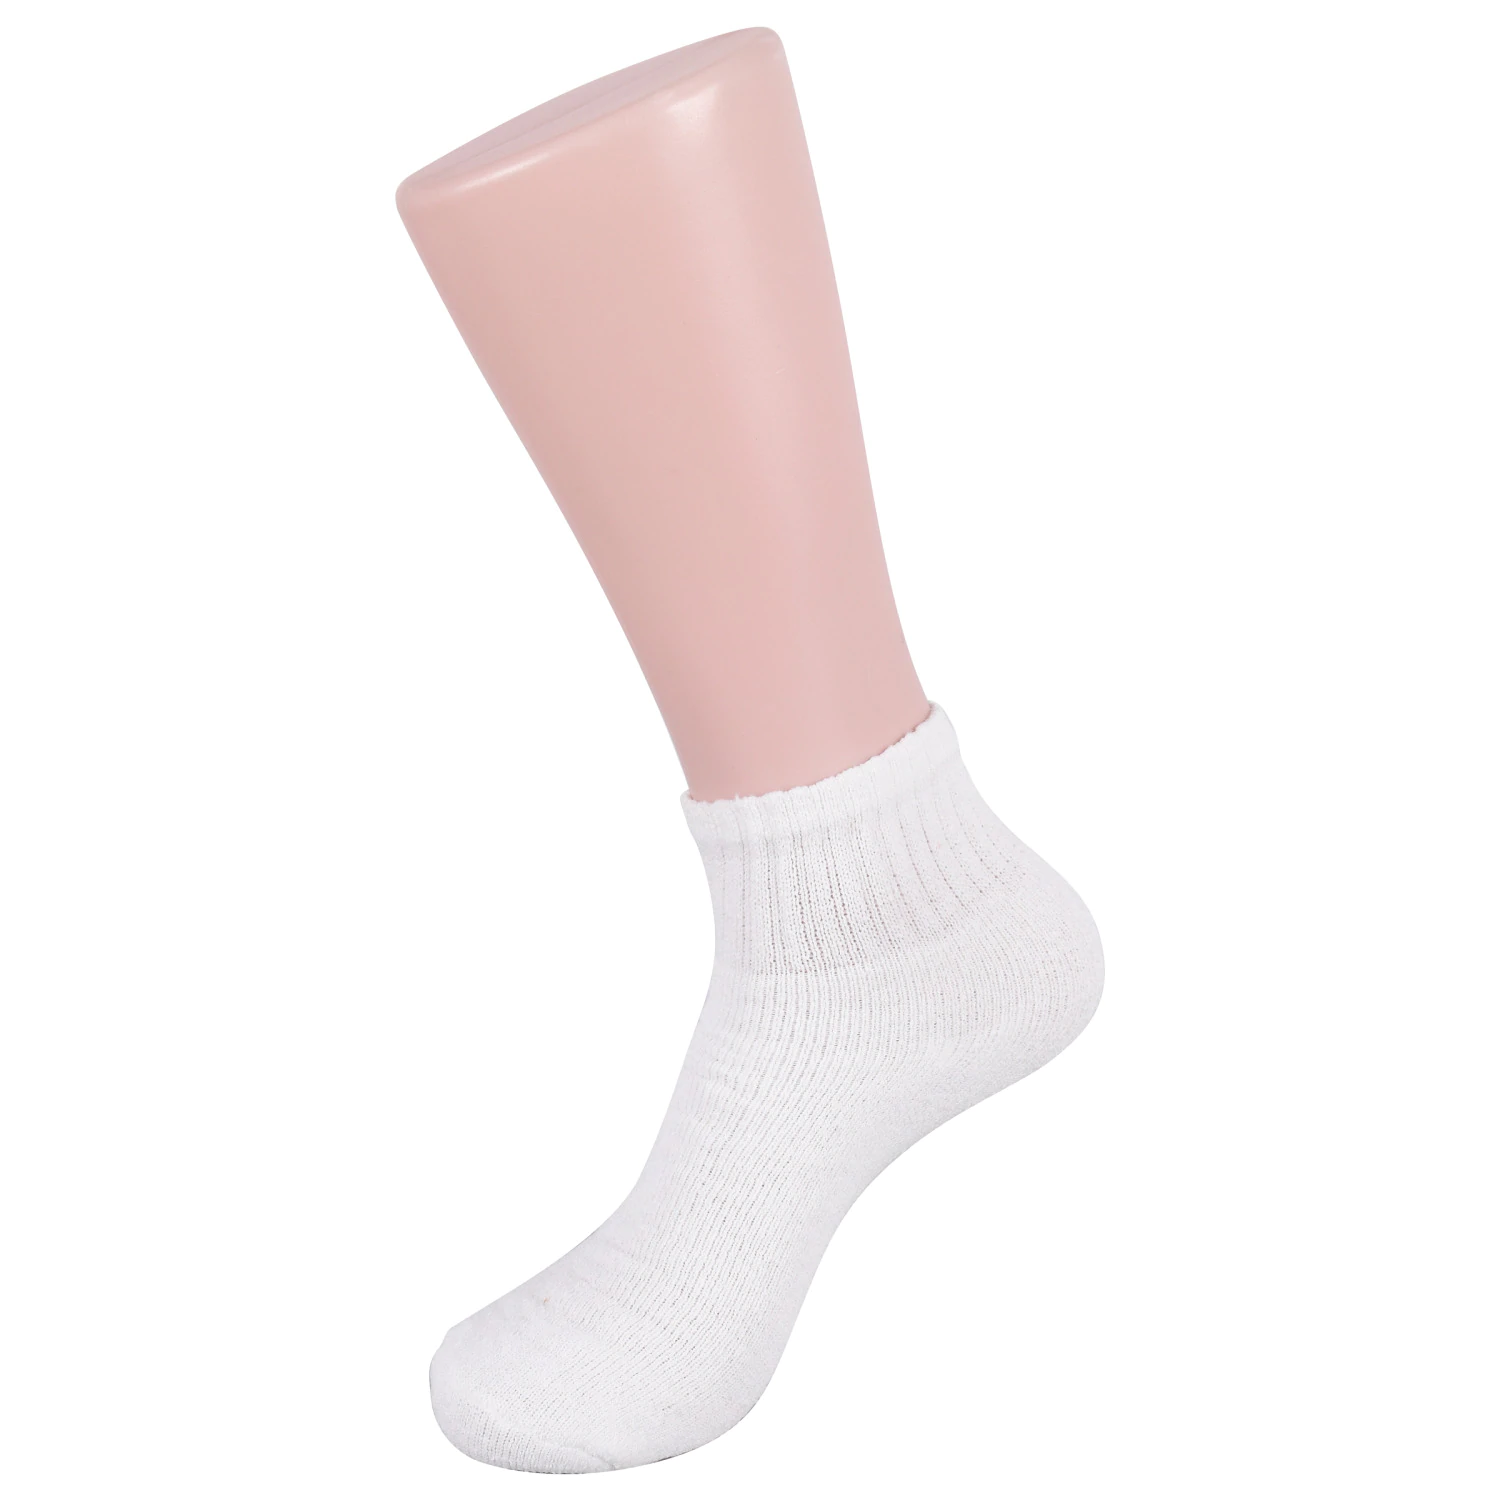 Womens White Socks.